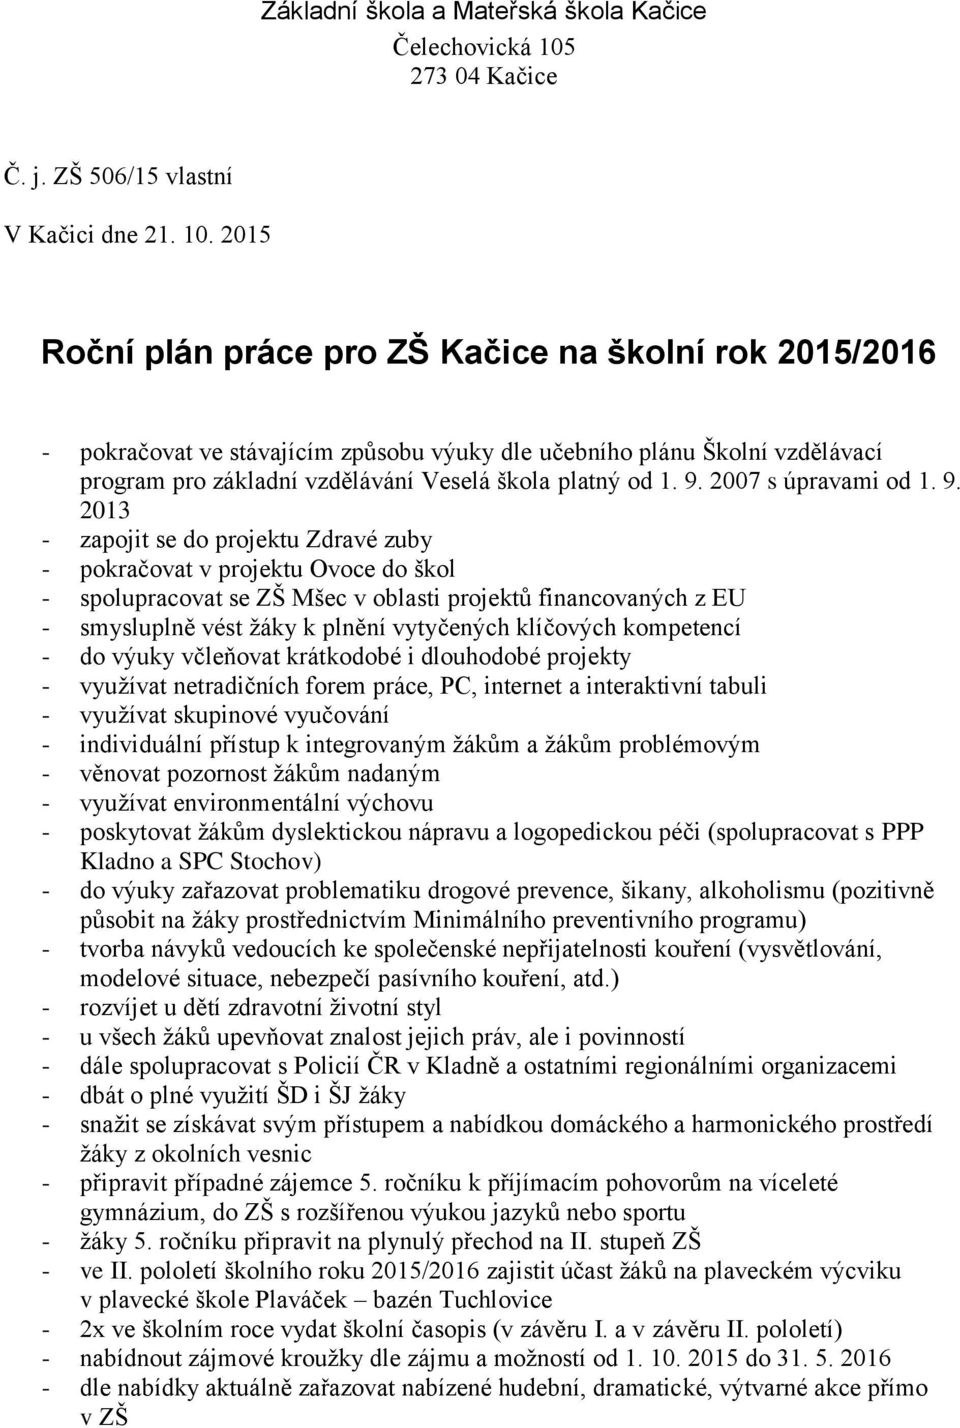 2015 Roční plán práce pro ZŠ Kačice na školní rok 2015/2016 - pokračovat ve stávajícím způsobu výuky dle učebního plánu Školní vzdělávací program pro základní vzdělávání Veselá škola platný od 1. 9.